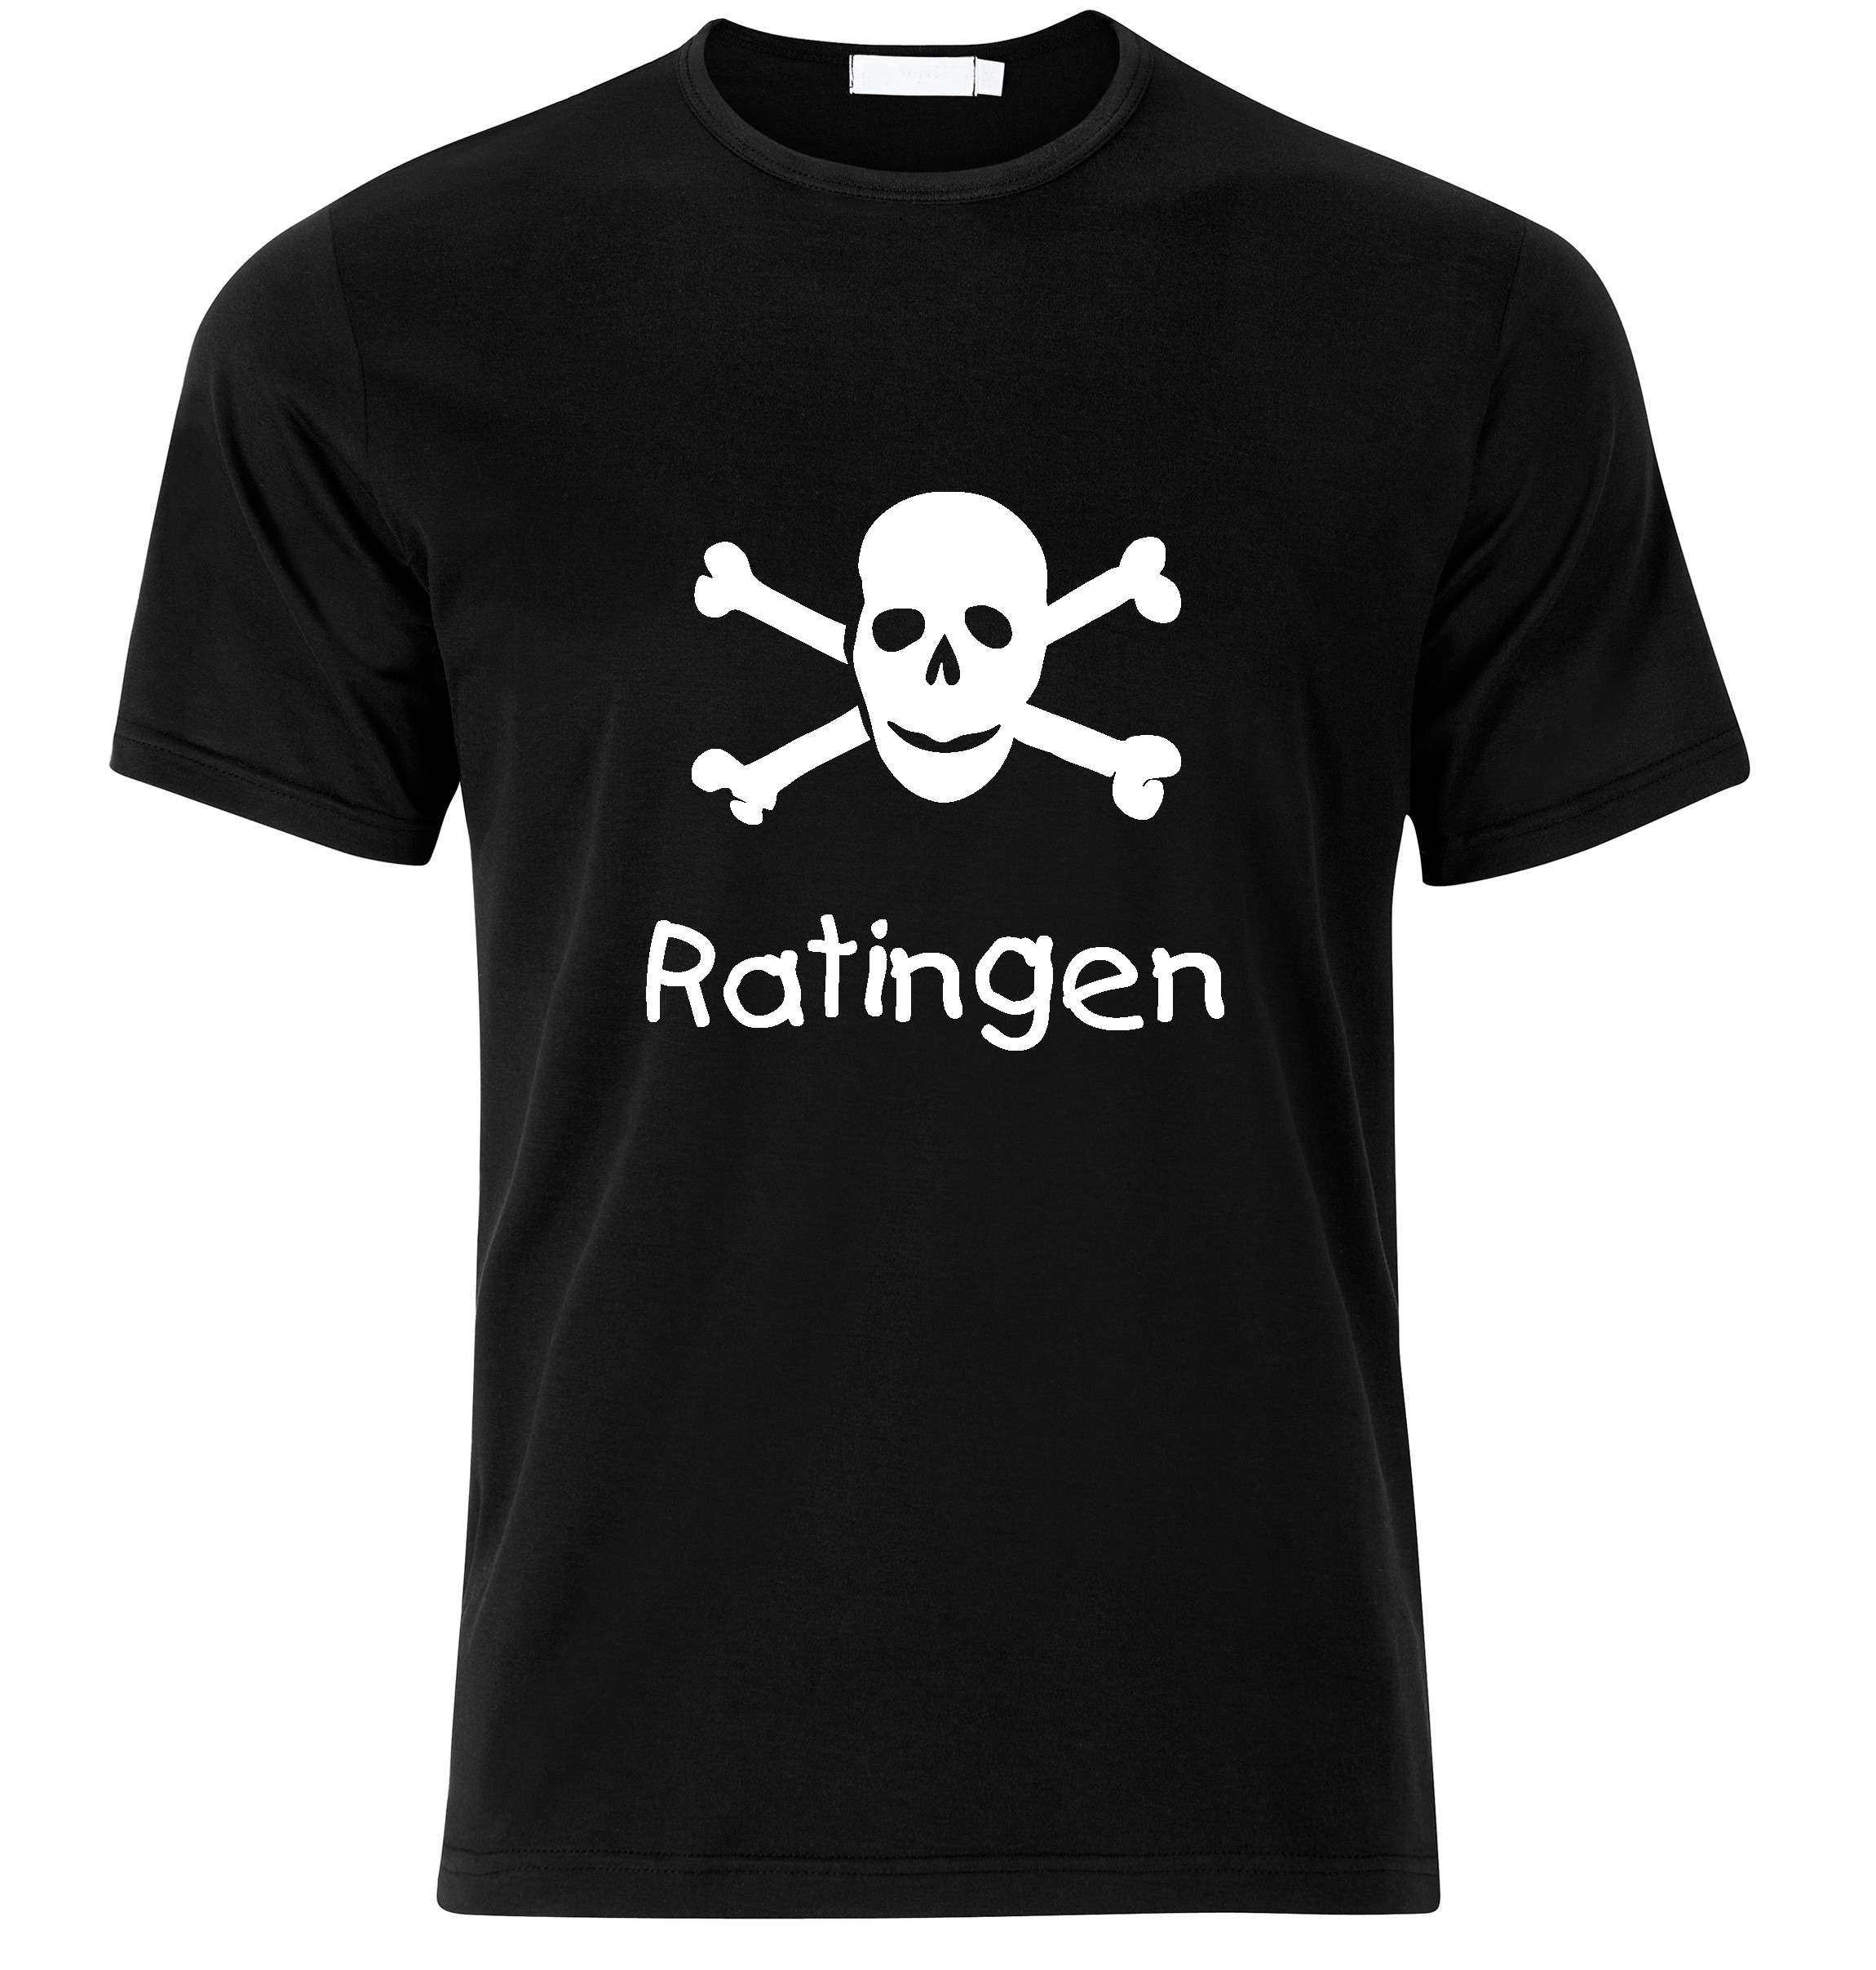 T-Shirt Ratingen Jolly Roger, Totenkopf